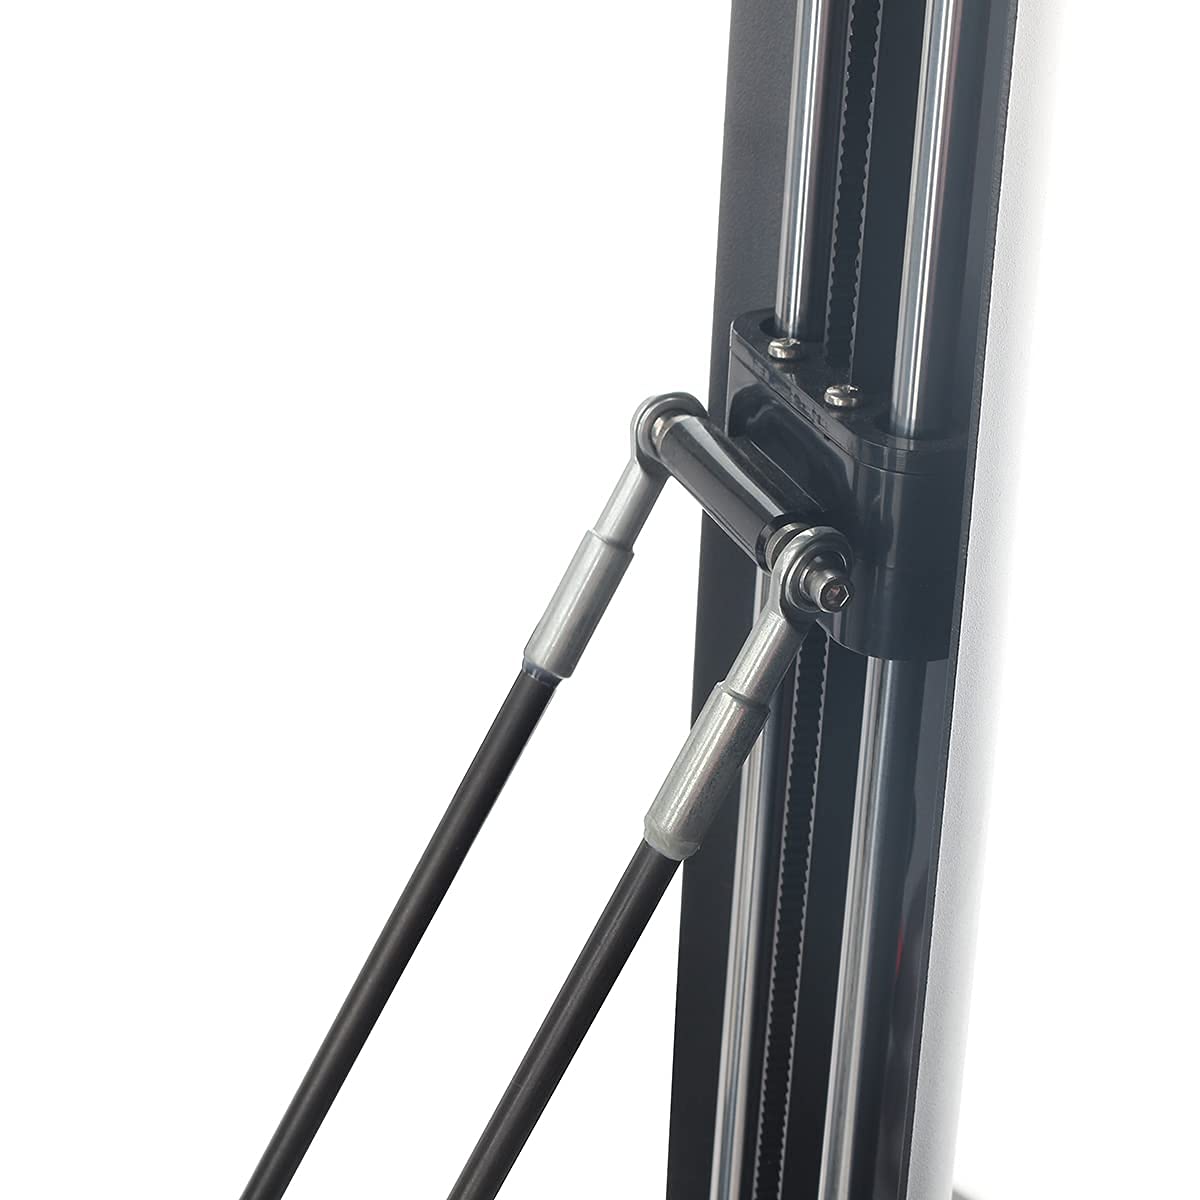 FLSUN® QQ-S Pro Parallel Arms x3 - Original Carbon Fiber Rods